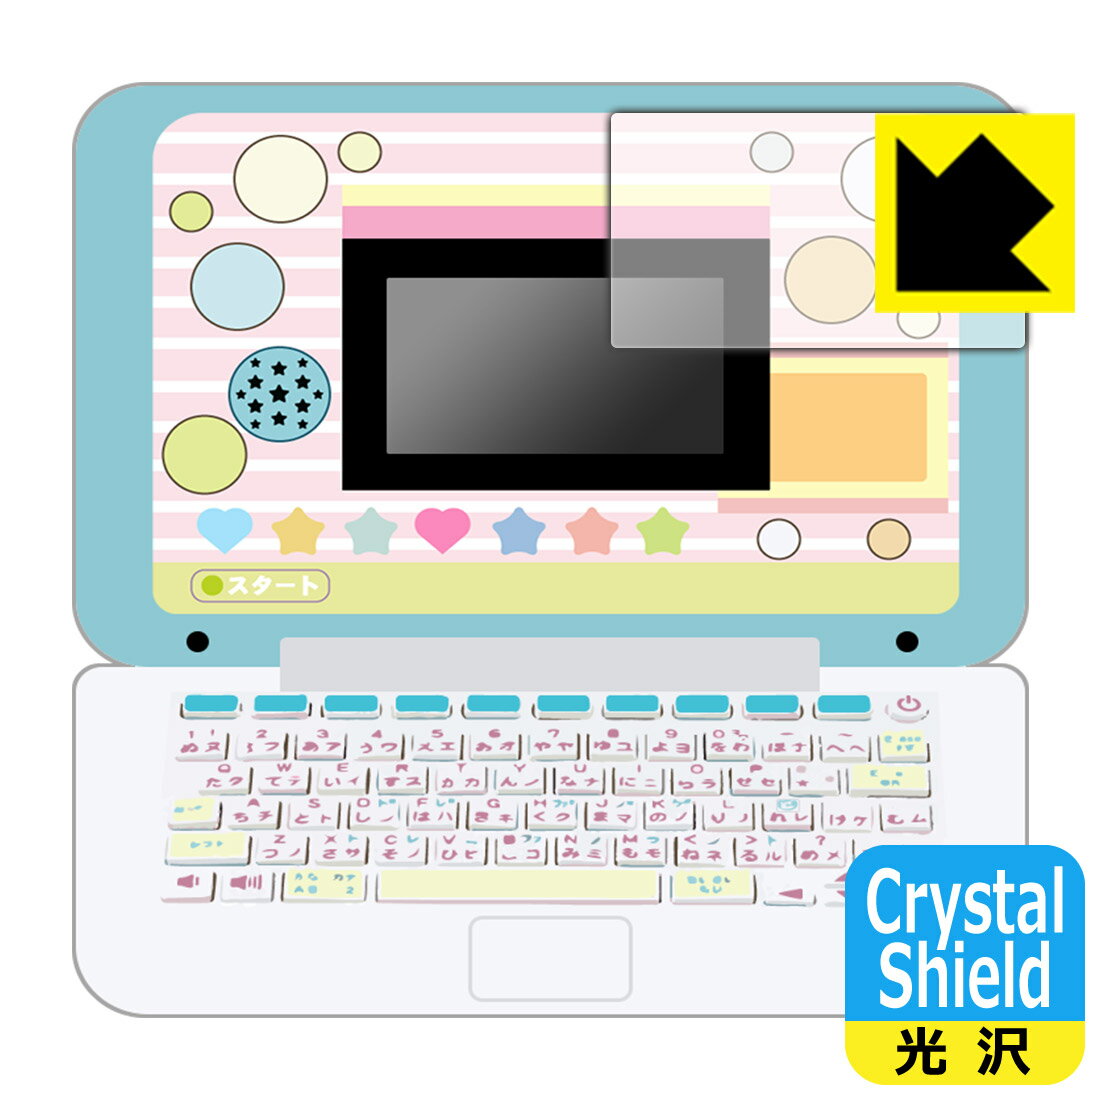 ●対応機種 : セガトイズ マウスできせかえ！ すみっコぐらしパソコン / すみっコぐらしパソコン+(プラス) 用の商品です。●内容量 : 1枚●※このページに記載されている会社名や製品名、対応機種名などは各社の商標、または登録商標です。●「Crystal Shield」は高い透明度と光沢感で、保護フィルムを貼っていないかのようなクリア感のある『光沢タイプの保護フィルム』●安心の国産素材を使用。日本国内の自社工場で製造し出荷しています。【ポスト投函送料無料】商品は【ポスト投函発送 (追跡可能メール便)】で発送します。お急ぎ、配達日時を指定されたい方は以下のクーポンを同時購入ください。【お急ぎ便クーポン】　プラス110円(税込)で速達扱いでの発送。お届けはポストへの投函となります。【配達日時指定クーポン】　プラス550円(税込)で配達日時を指定し、宅配便で発送させていただきます。【お急ぎ便クーポン】はこちらをクリック【配達日時指定クーポン】はこちらをクリック 　 貼っていることを意識させないほどの高い透明度に、高級感あふれる光沢・クリアな仕上げとなります。 動画視聴や画像編集など、機器本来の発色を重視したい方におすすめです。 ハードコート加工がされており、キズや擦れに強くなっています。簡単にキズがつかず長くご利用いただけます。 表面はフッ素コーティングがされており、皮脂や汚れがつきにくく、また、落ちやすくなっています。 指滑りもなめらかで、快適な使用感です。 油性マジックのインクもはじきますので簡単に拭き取れます。 接着面は気泡の入りにくい特殊な自己吸着タイプです。素材に柔軟性があり、貼り付け作業も簡単にできます。また、はがすときにガラス製フィルムのように割れてしまうことはありません。 貼り直しが何度でもできるので、正しい位置へ貼り付けられるまでやり直すことができます。 抗菌加工によりフィルム表面の菌の繁殖を抑えることができます。清潔な画面を保ちたい方におすすめです。 ※抗菌率99.9％ / JIS Z2801 抗菌性試験方法による評価 最高級グレードの国産素材を日本国内の弊社工場で加工している完全な Made in Japan です。安心の品質をお届けします。 使用上の注意 ●本製品は機器の画面をキズなどから保護するフィルムです。他の目的にはご使用にならないでください。 ●本製品は液晶保護および機器本体を完全に保護することを保証するものではありません。機器の破損、損傷、故障、その他損害につきましては一切の責任を負いかねます。 ●製品の性質上、画面操作の反応が変化したり、表示等が変化して見える場合がございます。 ●貼り付け作業時の失敗(位置ズレ、汚れ、ゆがみ、折れ、気泡など)および取り外し作業時の破損、損傷などについては、一切の責任を負いかねます。 ●水に濡れた状態でのご使用は吸着力の低下などにより、保護フィルムがはがれてしまう場合がございます。防水対応の機器でご使用の場合はご注意ください。 ●アルコール類やその他薬剤を本製品に付着させないでください。表面のコーティングや吸着面が変質するおそれがあります。 ●品質向上のため、仕様などを予告なく変更する場合がございますので、予めご了承ください。